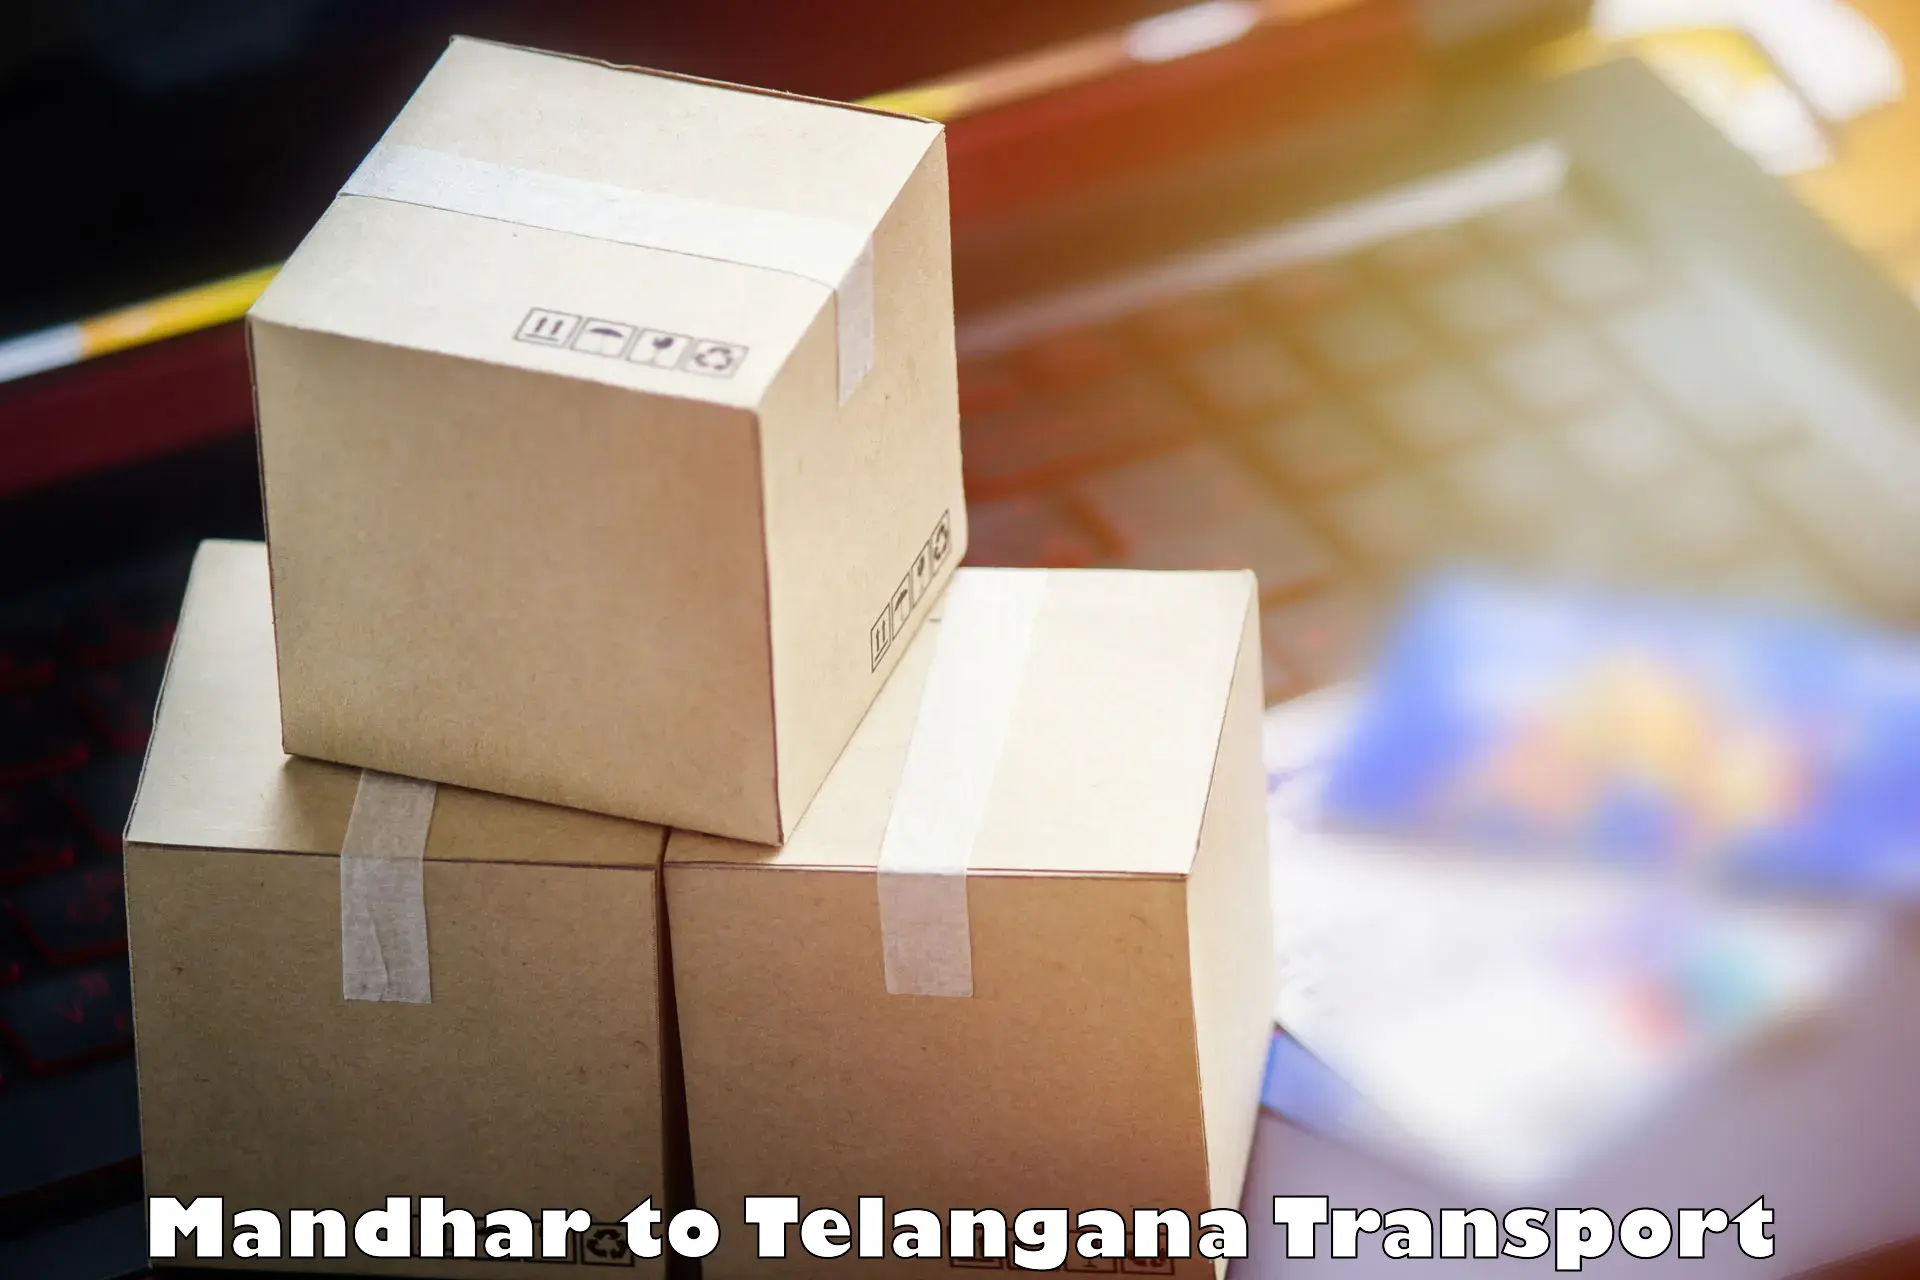 Furniture transport service Mandhar to Yellandu